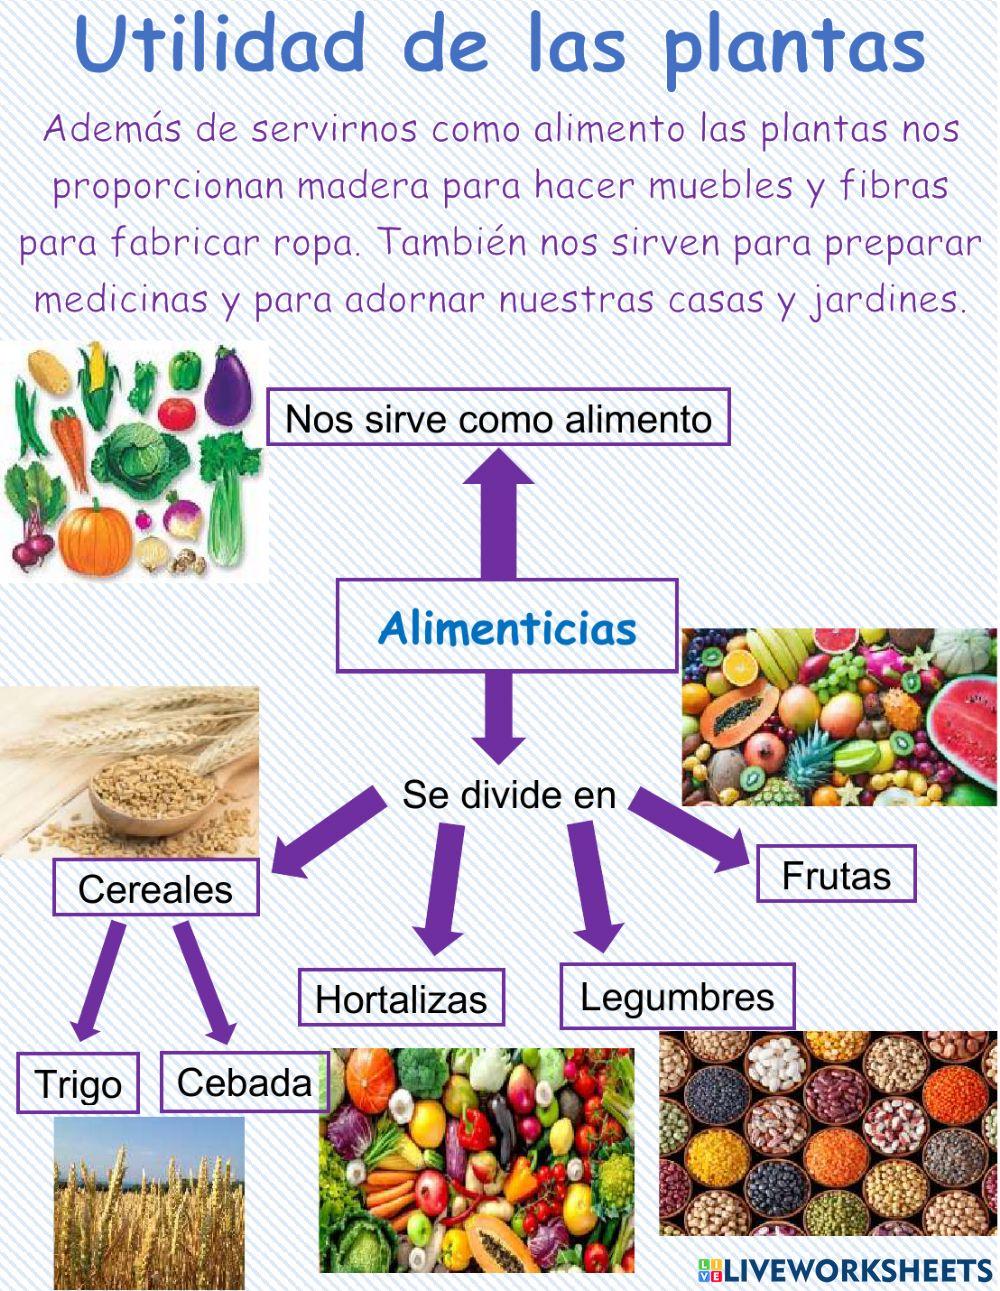 Utilidad de las plantas: Alimenticias